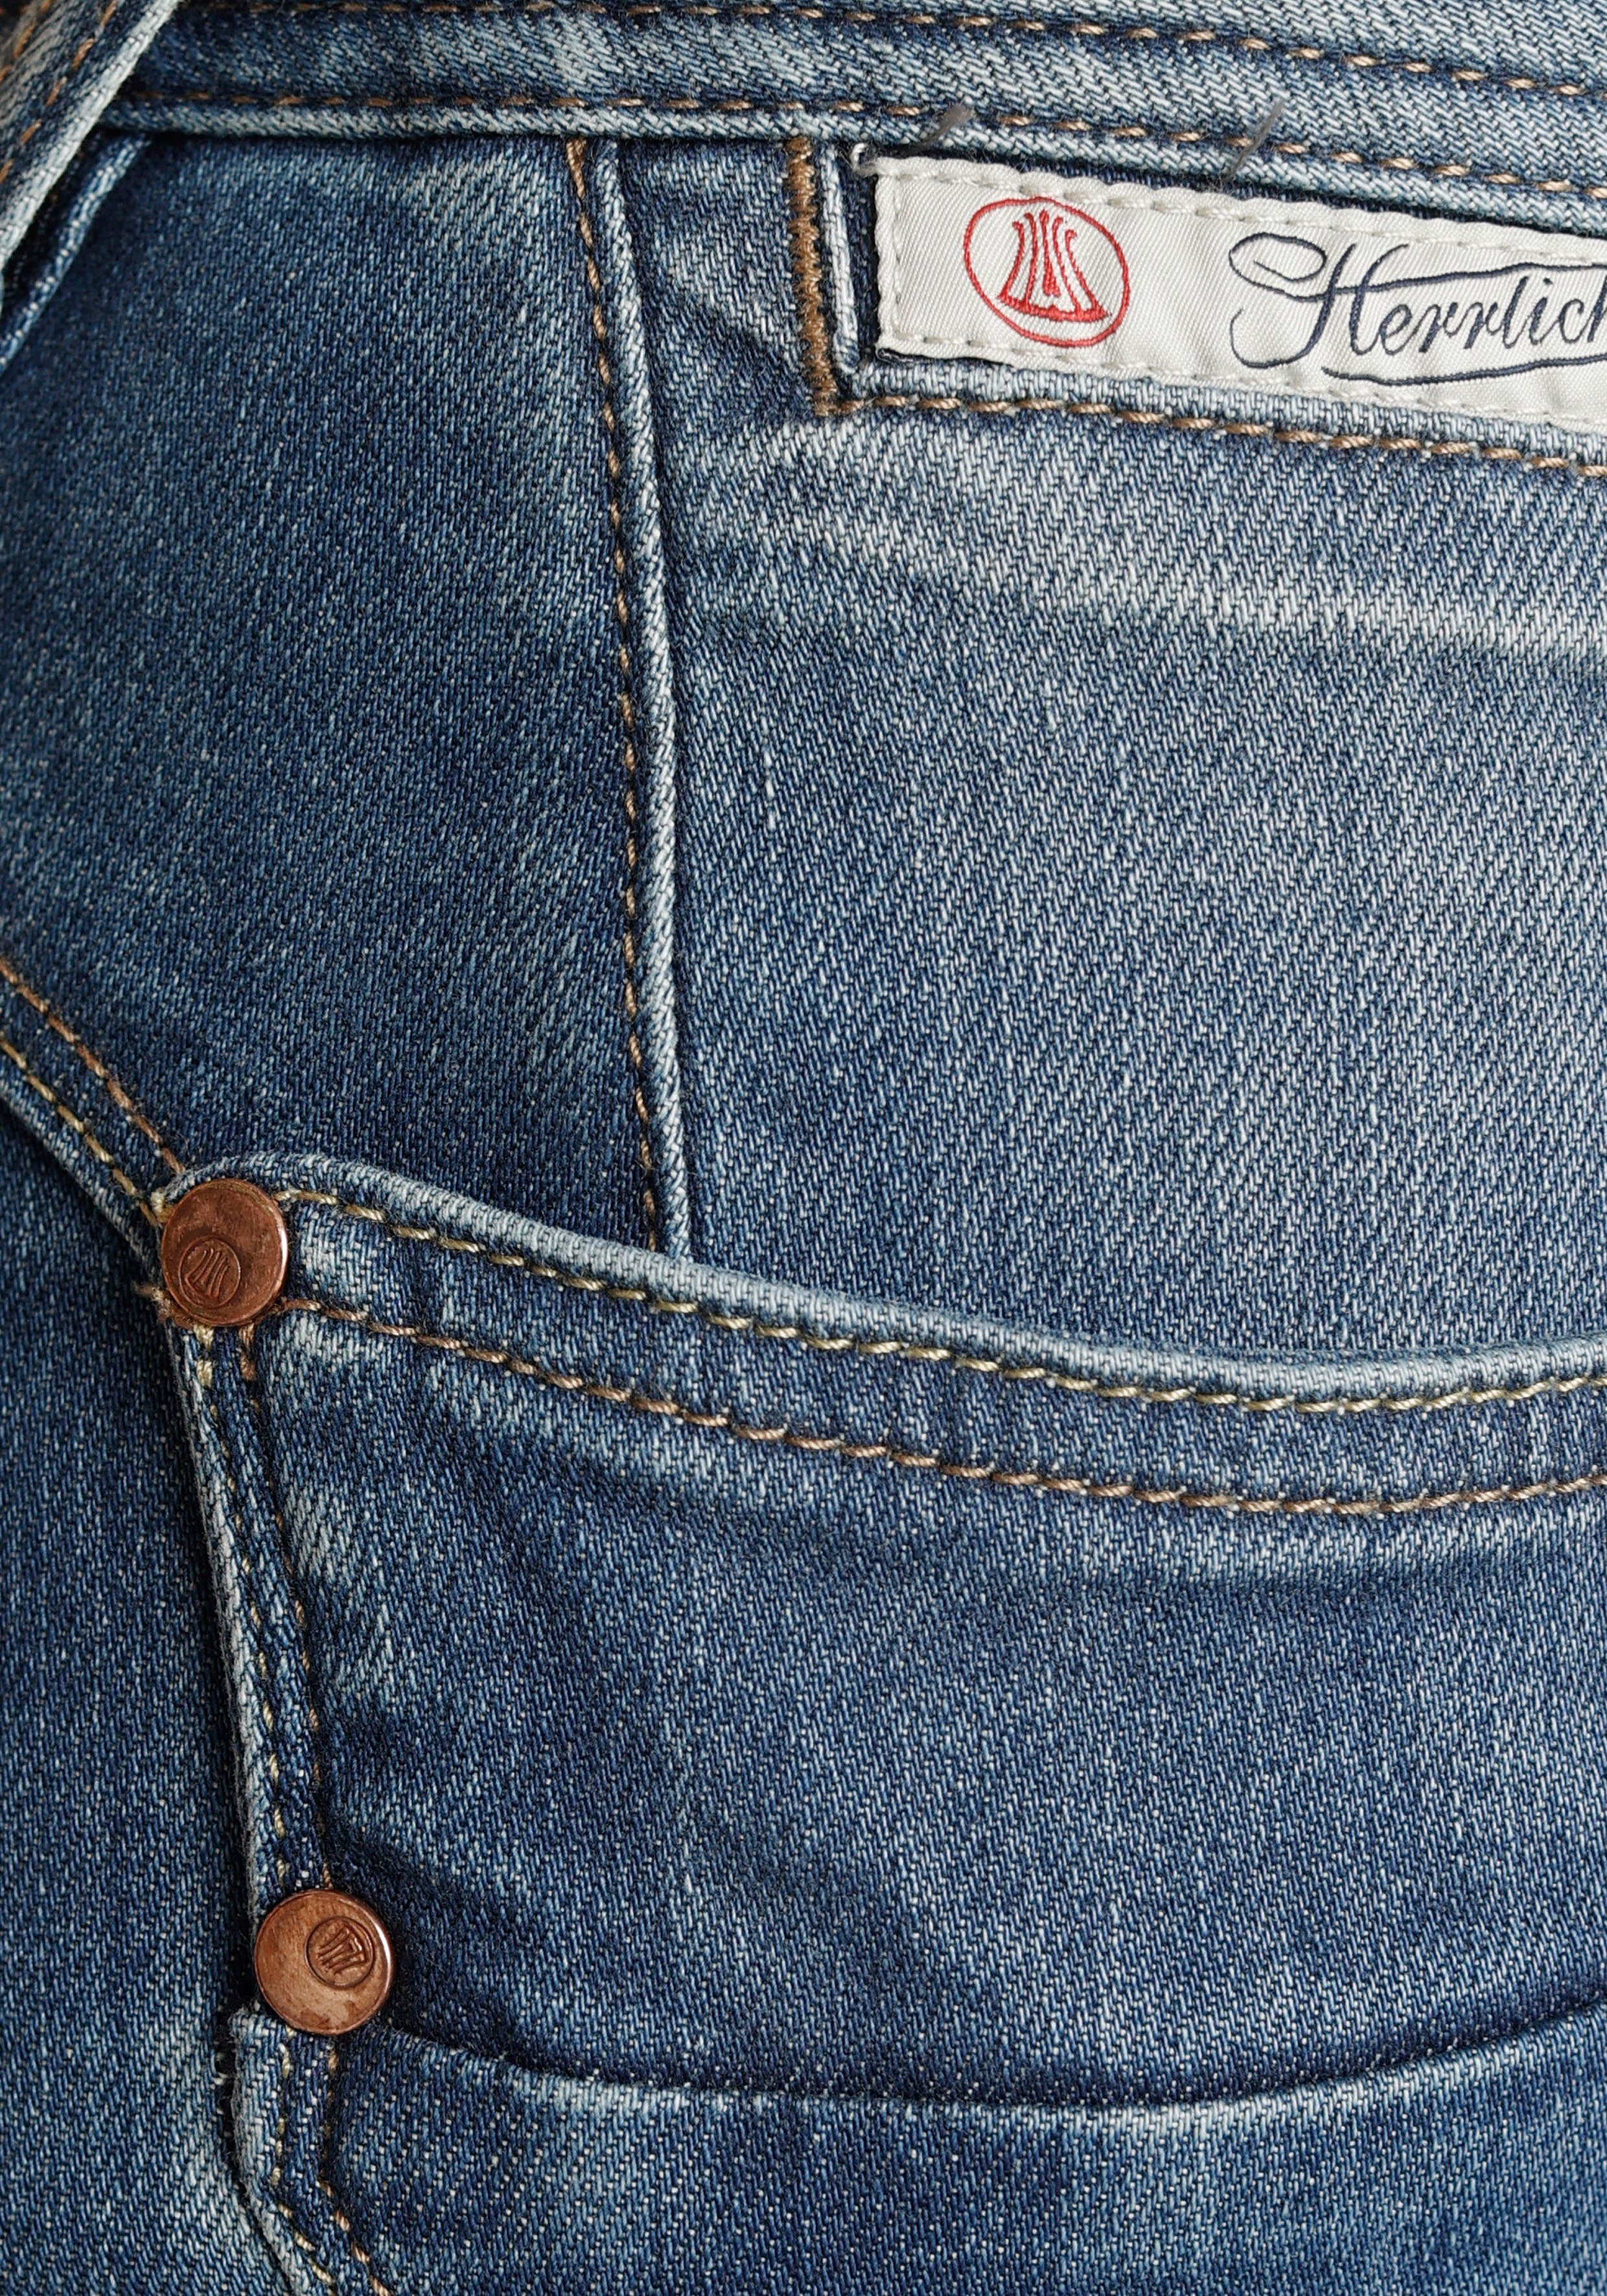 Kitotex PIPER Technology Herrlicher ORGANIC umweltfreundlich Slim-fit-Jeans SLIM dank